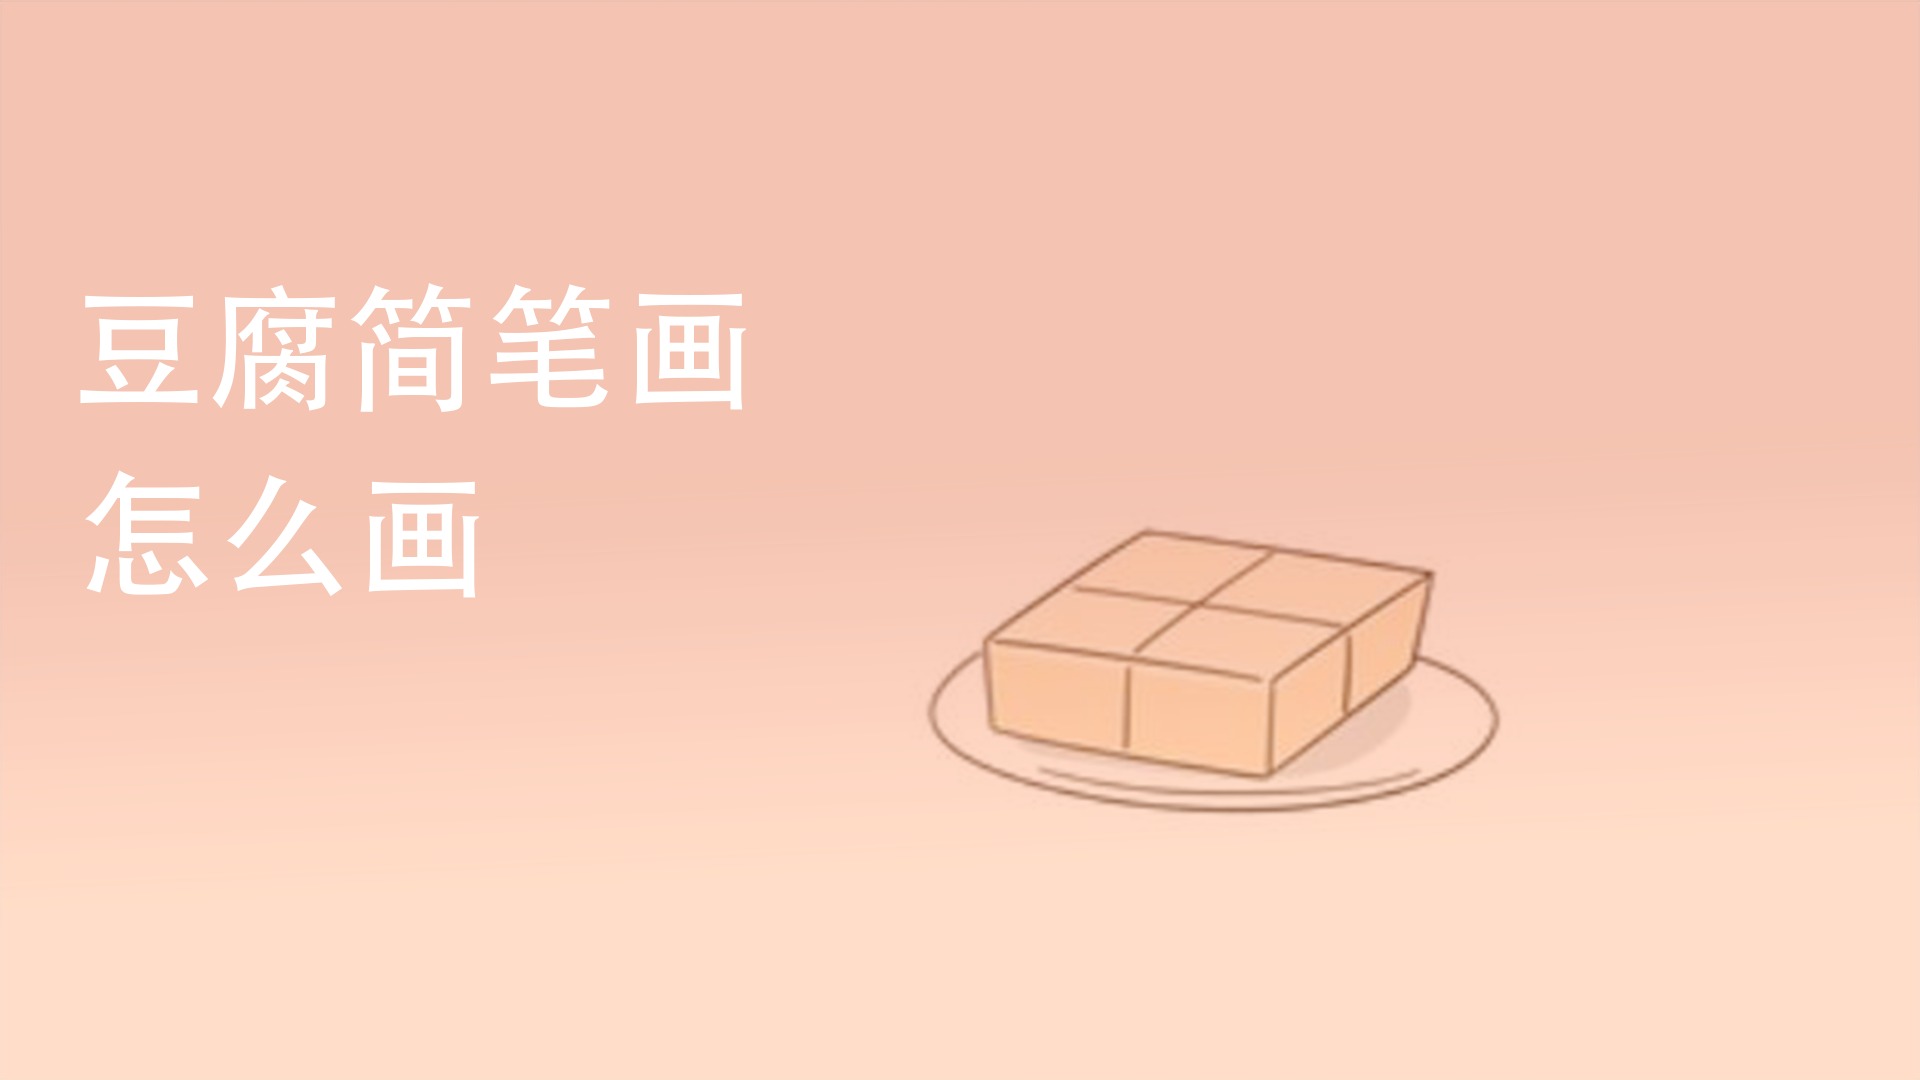 香煎豆腐的简笔画图片